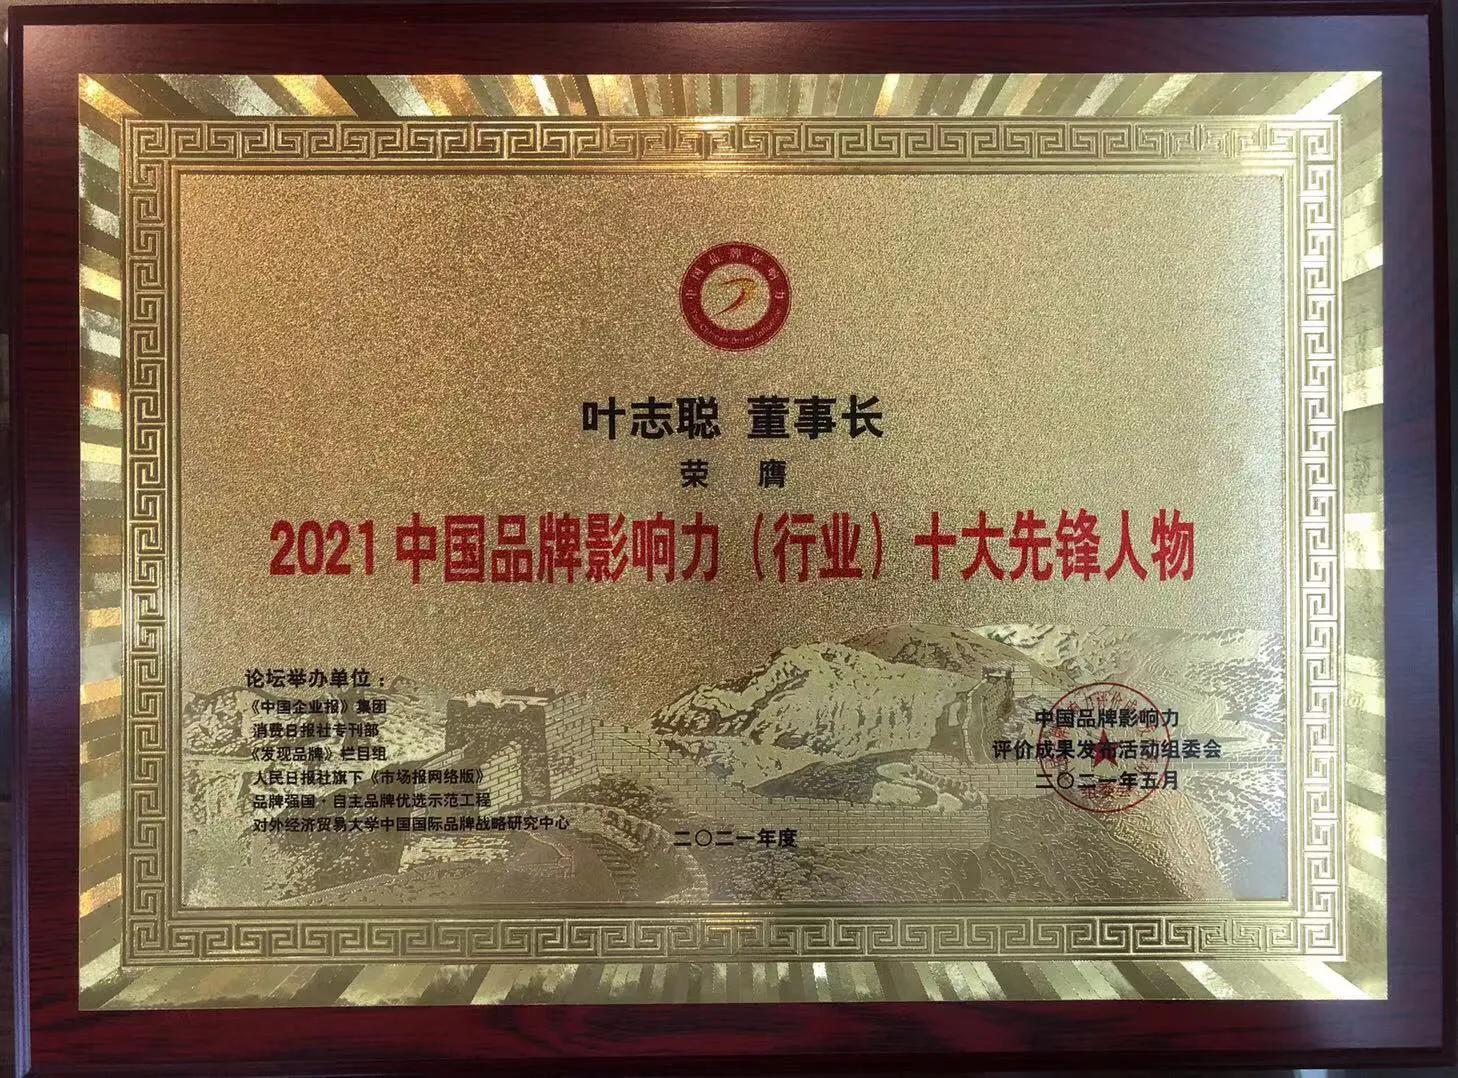 周大福酒获得“2021中国品牌影响力100强”殊荣